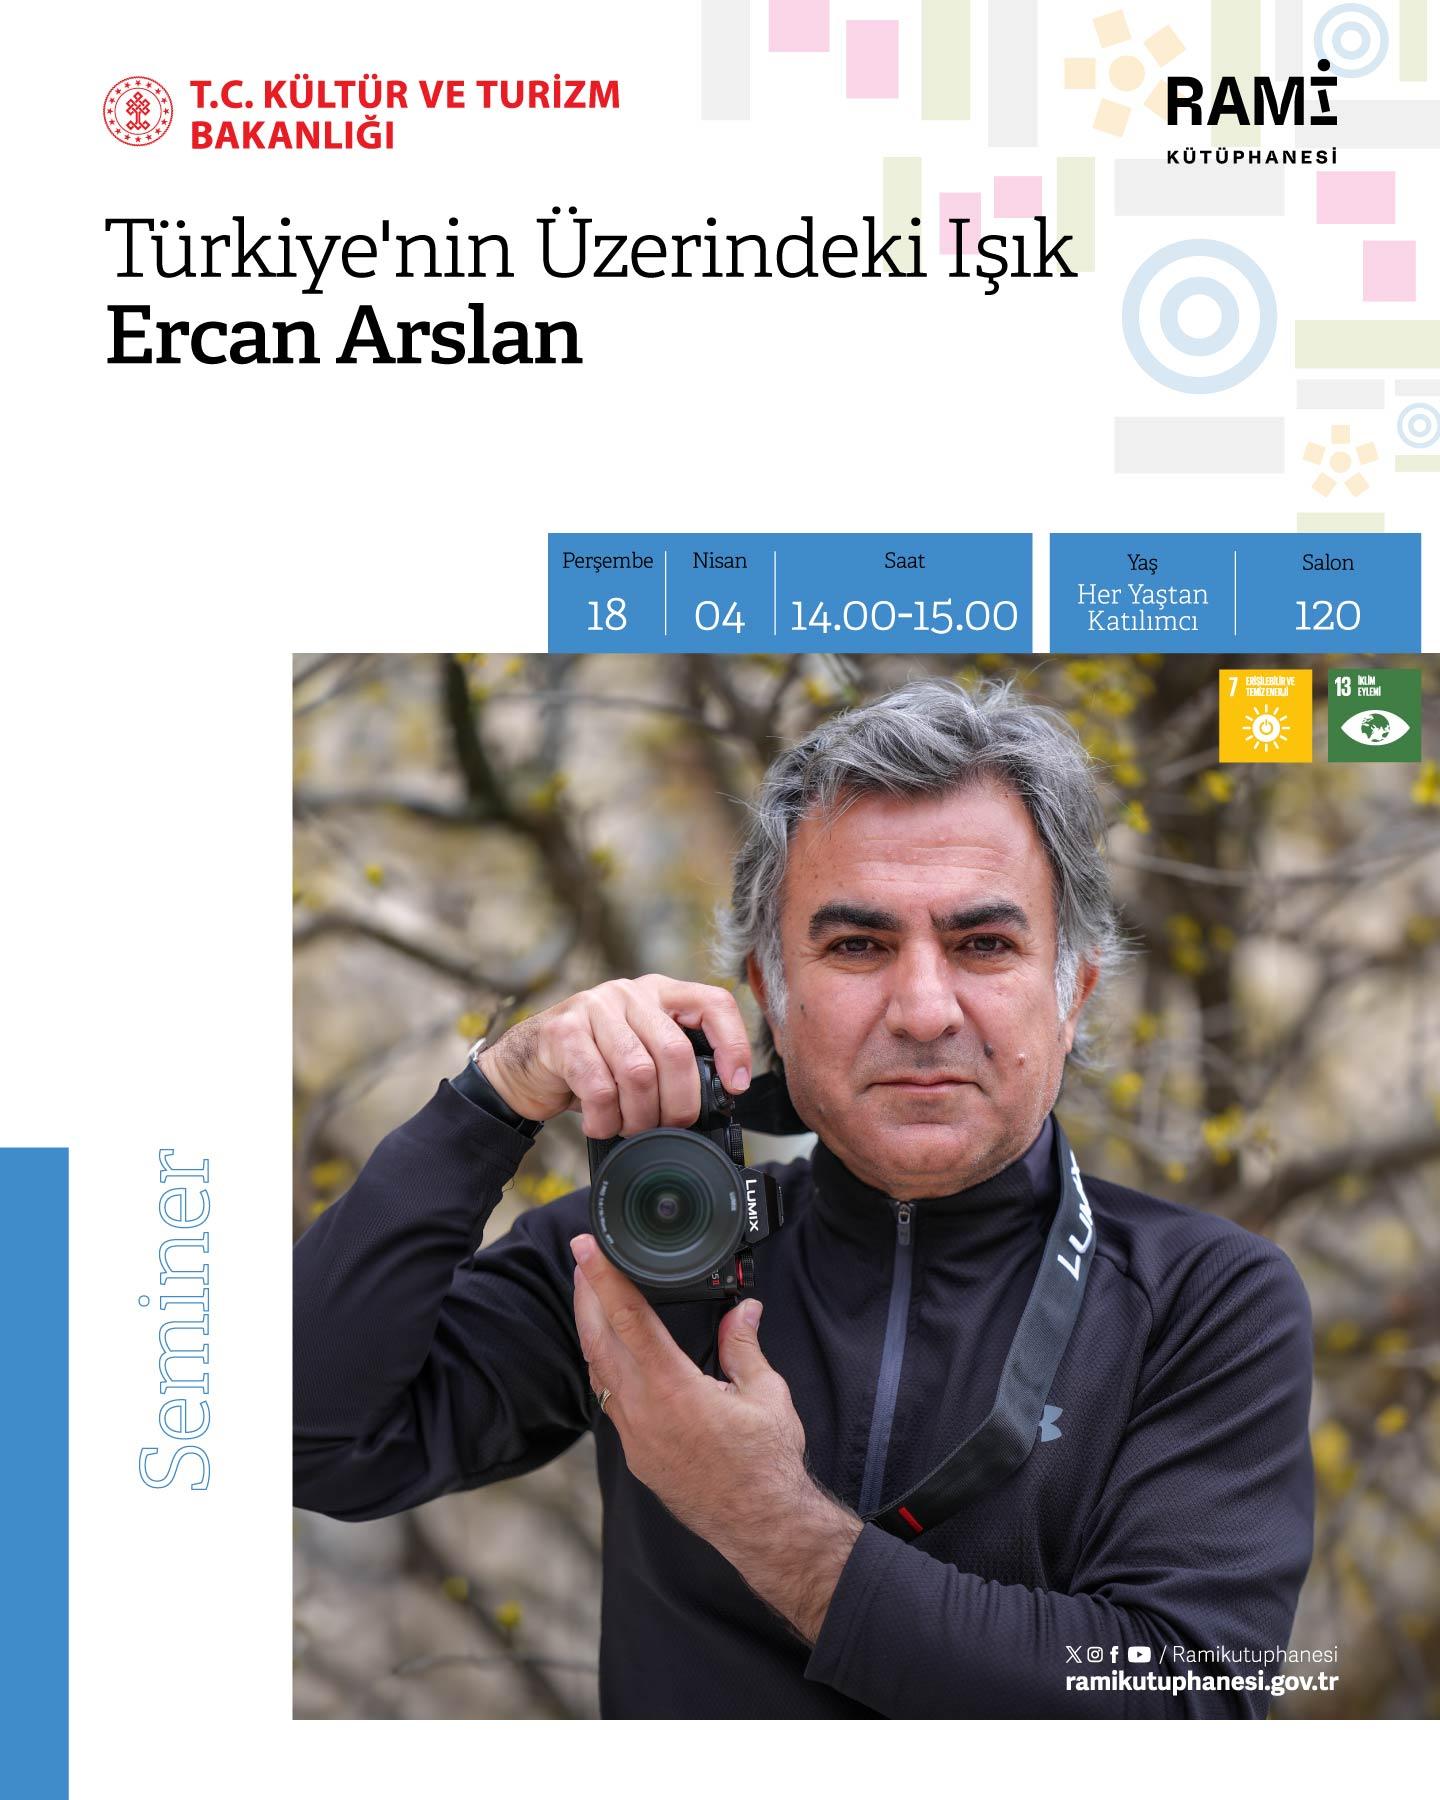 Türkiye'nin Üzerindeki Işık (Ercan Arslan)